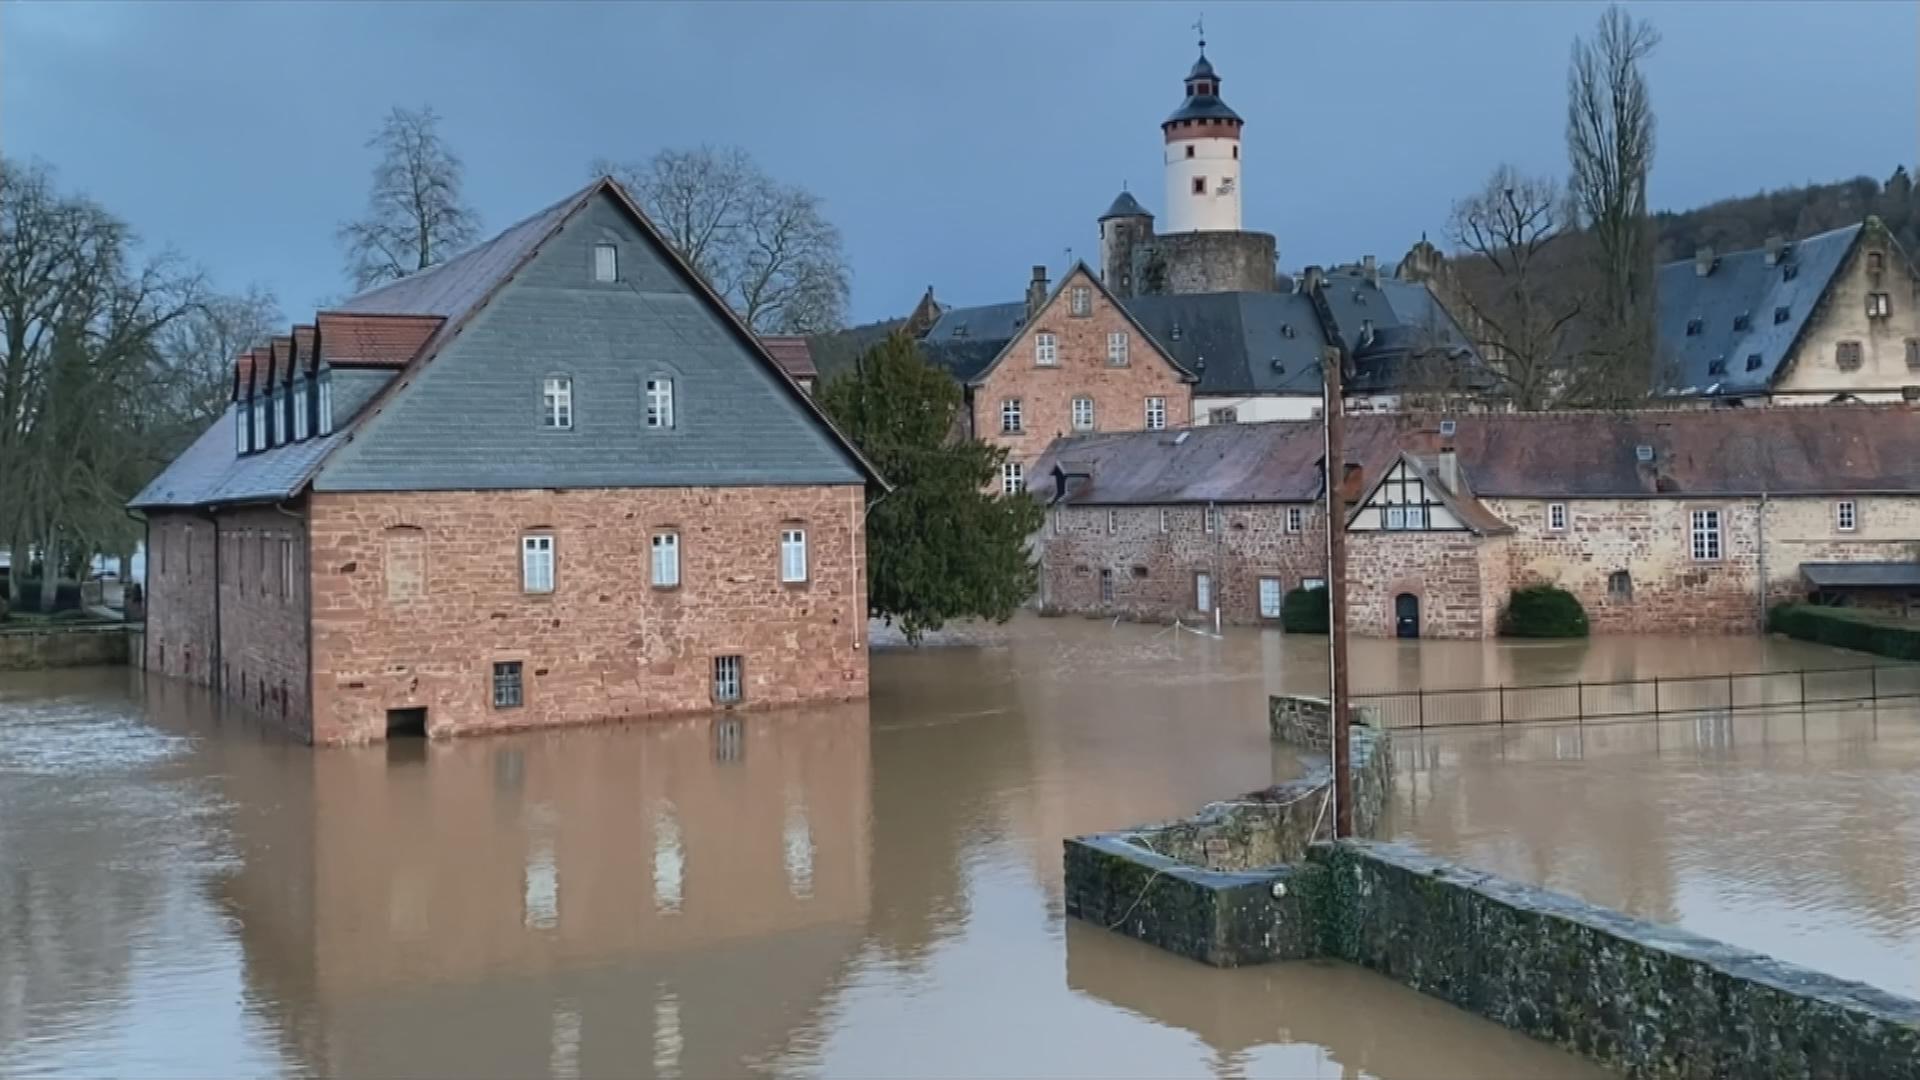 Auf dem Bild ist Hochwasser in einer Altstadt zu sehen